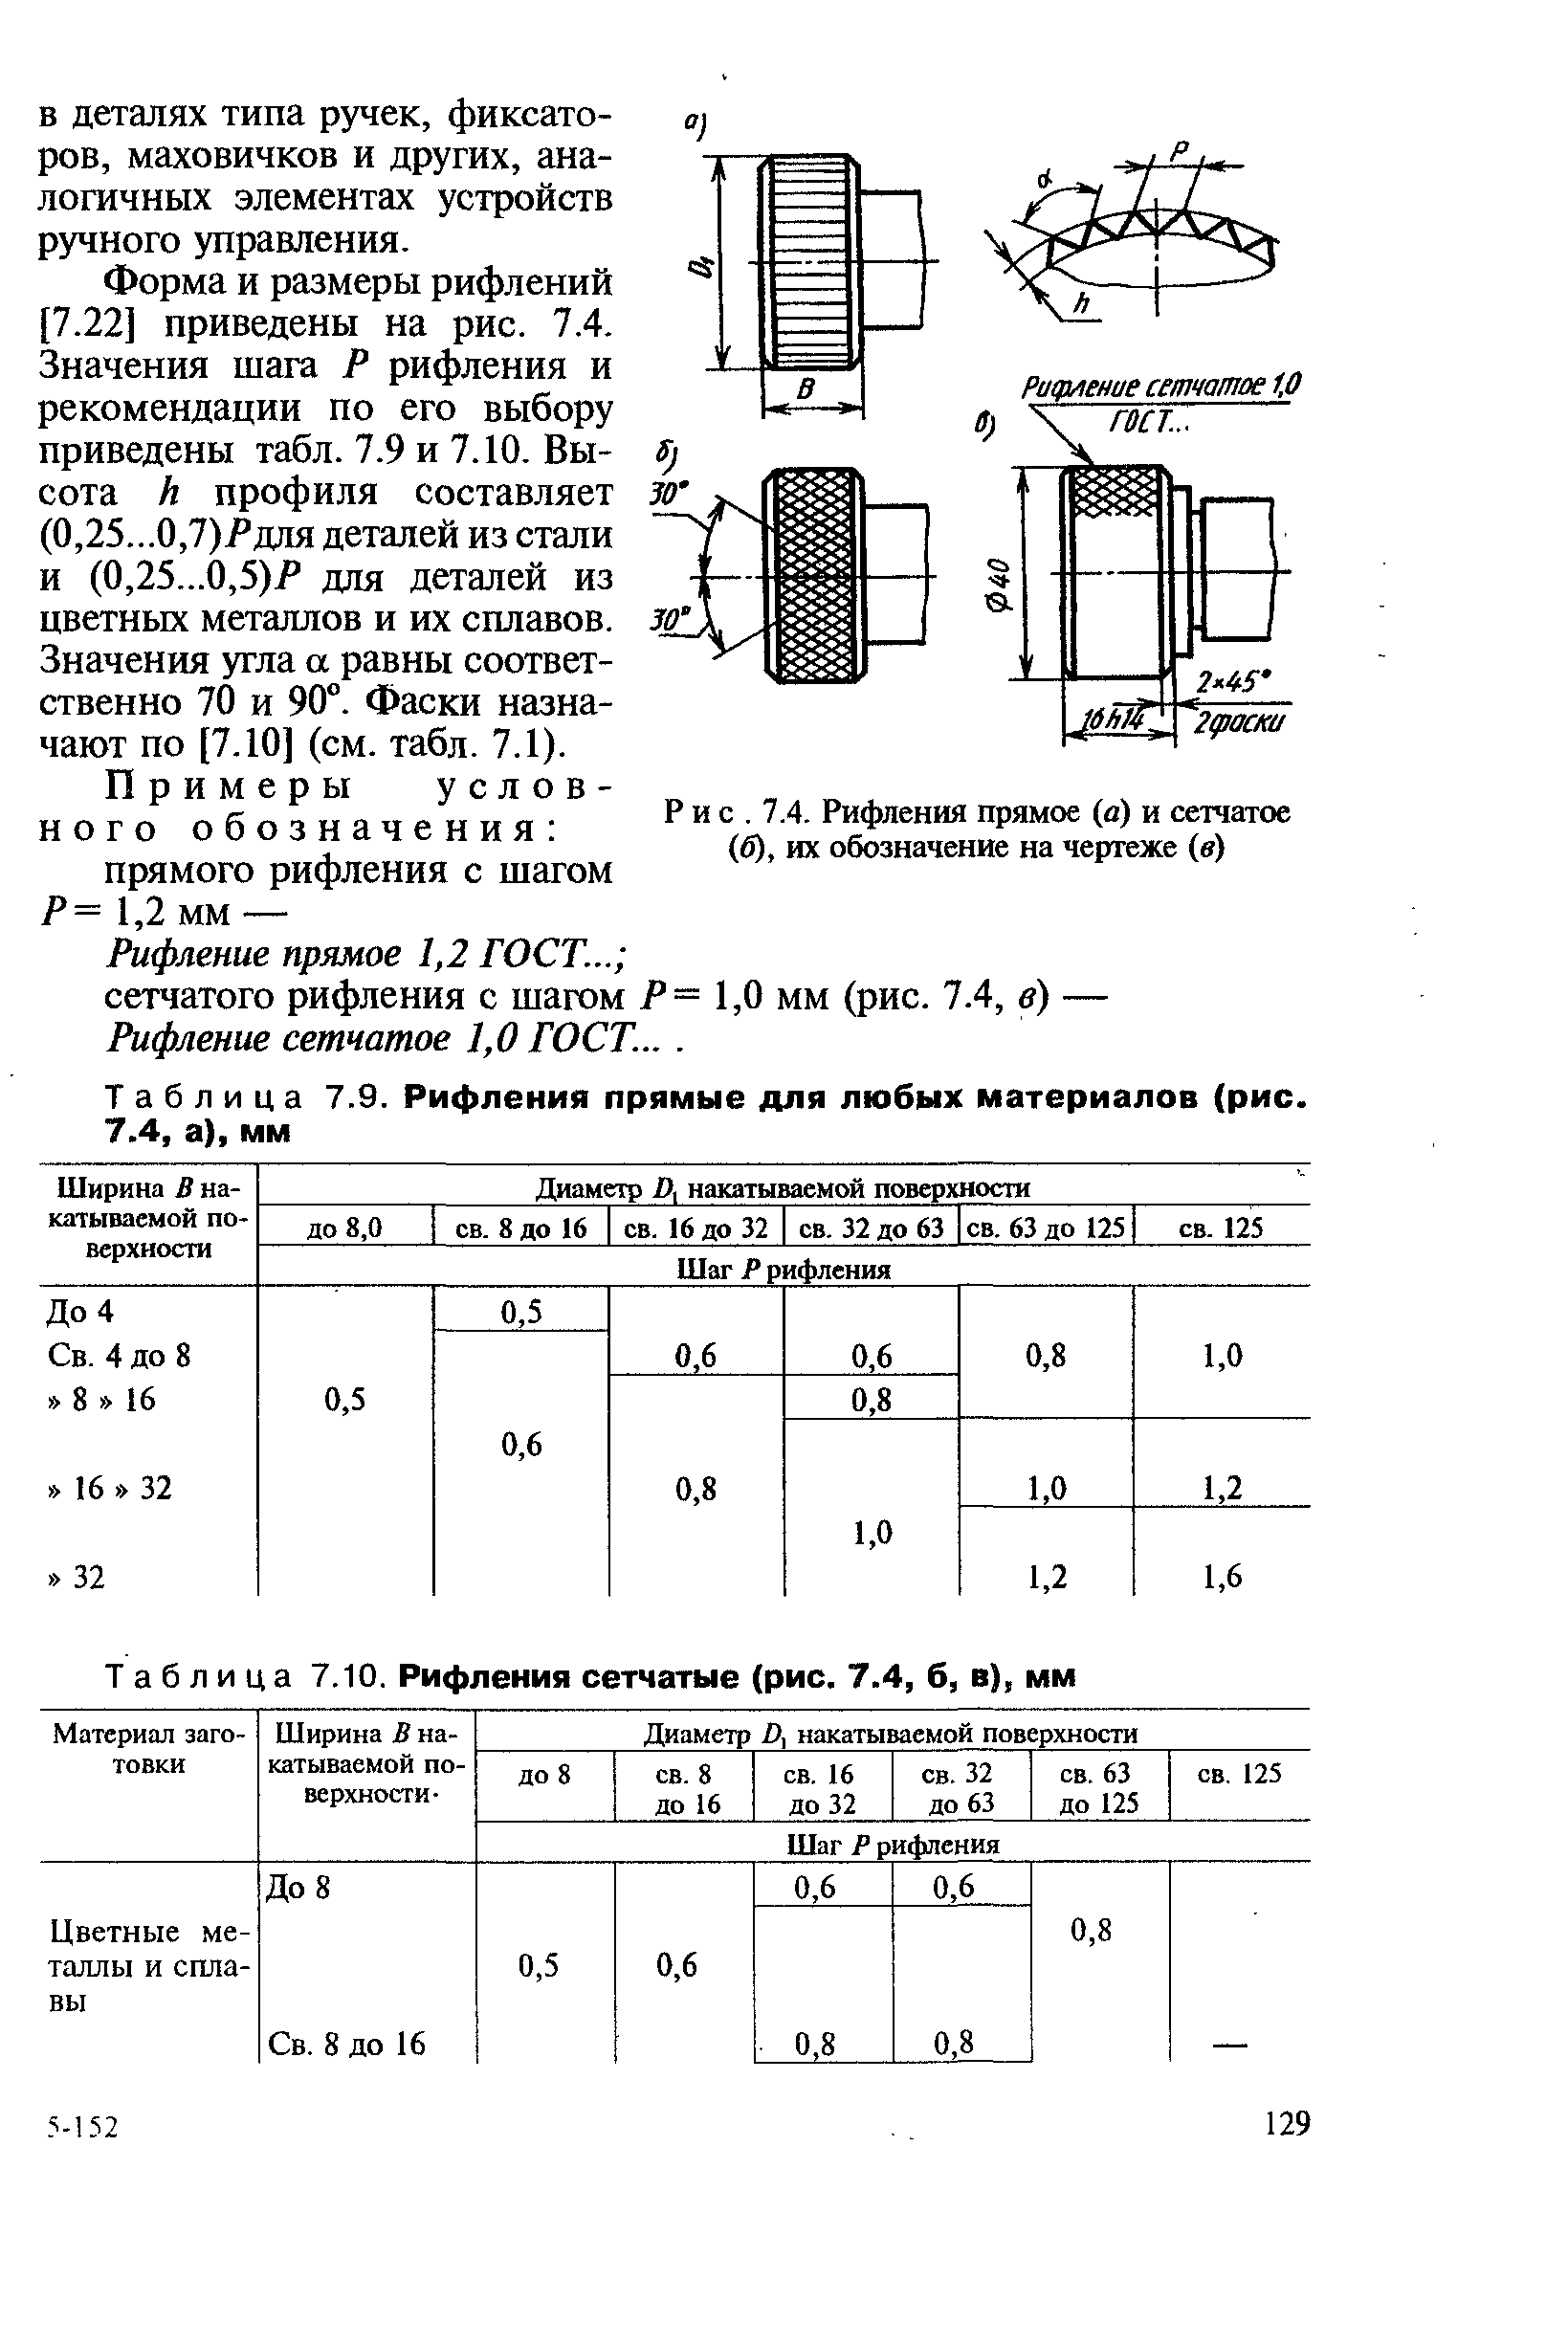 Таблица 7.10. Рифления сетчатые (рис. 7.4, б, в), мм
